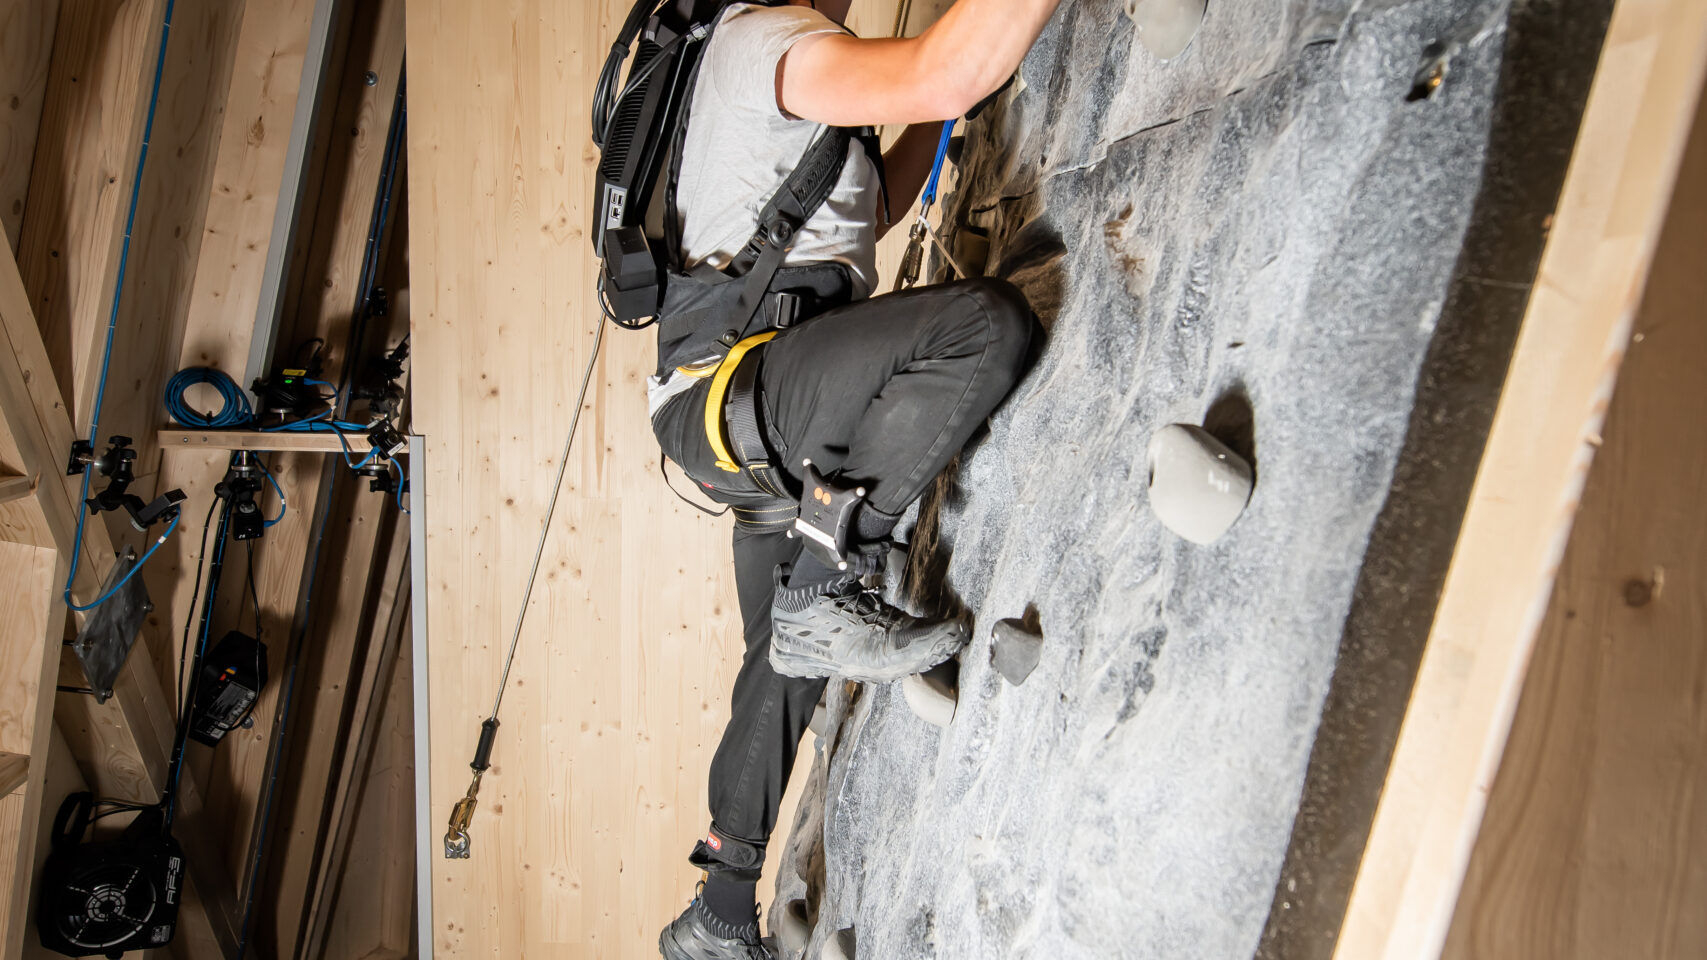 在卢塞恩的瑞士交通博物馆，可以通过虚拟现实护目镜和攀岩安全带“武装”虚拟攀登马特洪峰：这是瑞士红牛和各种合作伙伴发起的名为“The Edge Matterhorn”的倡议VR”，通过它复制了采尔马特的登山向导 Jérémie Heitz 和 Sam Anthamatten 的真实攀登，还提供了风、振动、纹理和众多物体或场景元素的 4D 效果